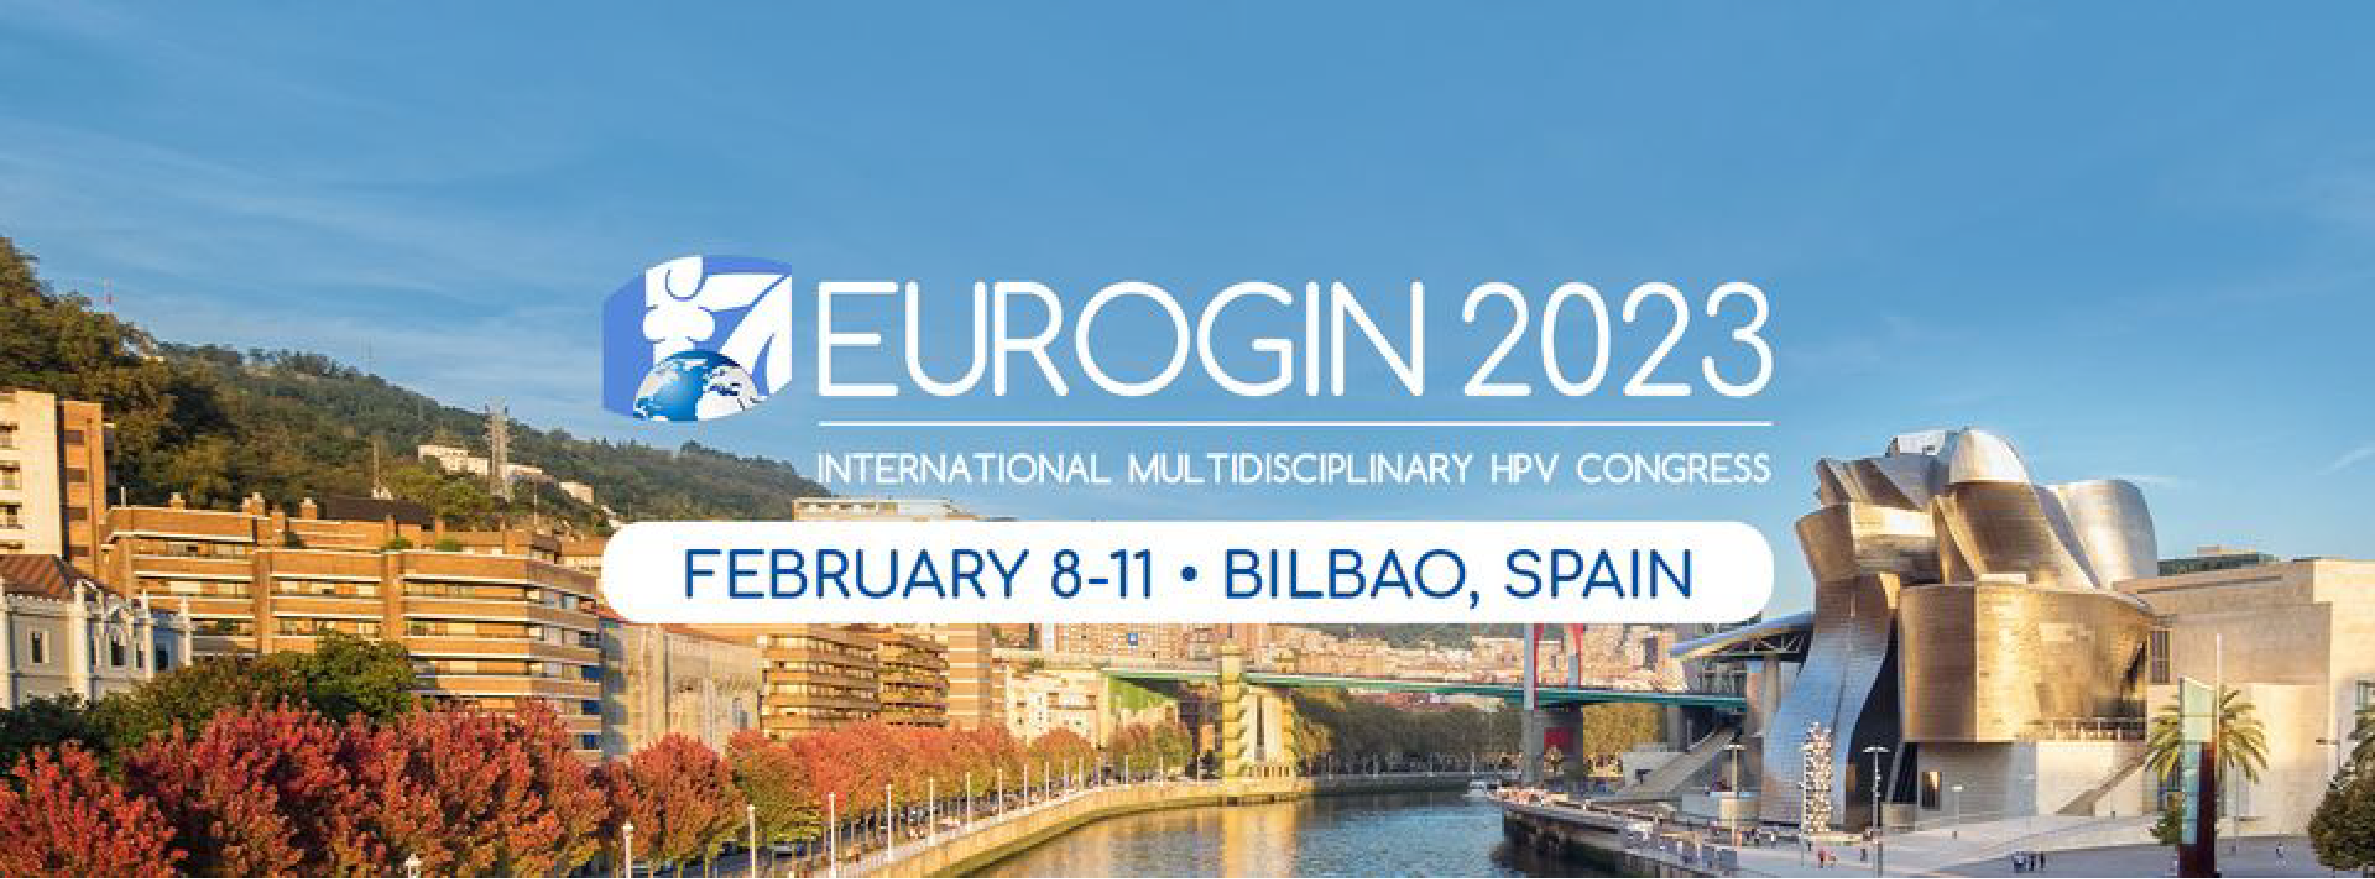 International Multidisciplinary HPV Congress - EUROGIN 2023